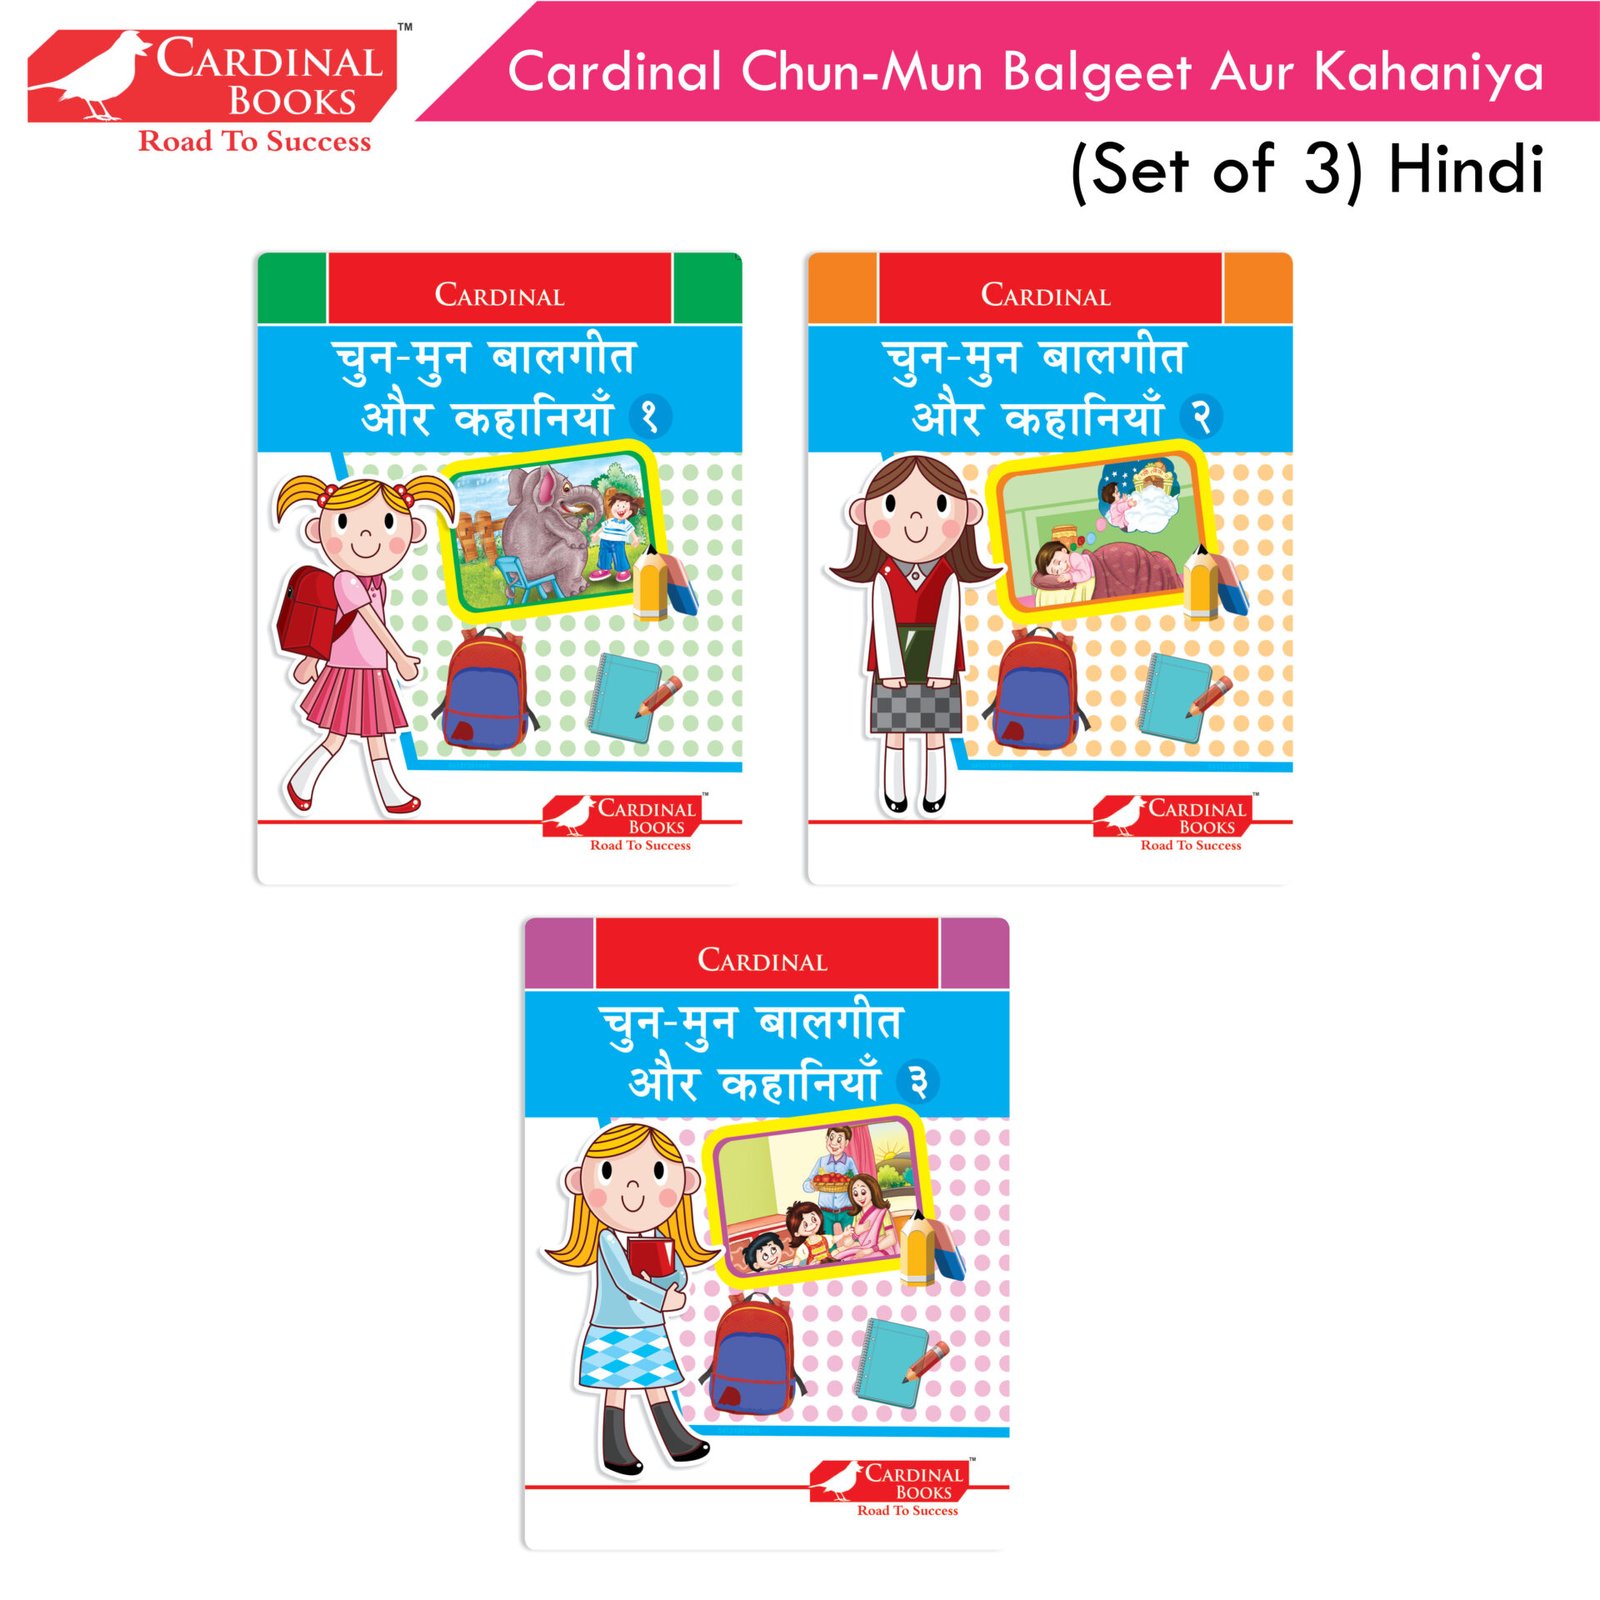 Cardinal Chun Mun Balgeet Aur Kahaniya Books Set of 3 Hindi 1